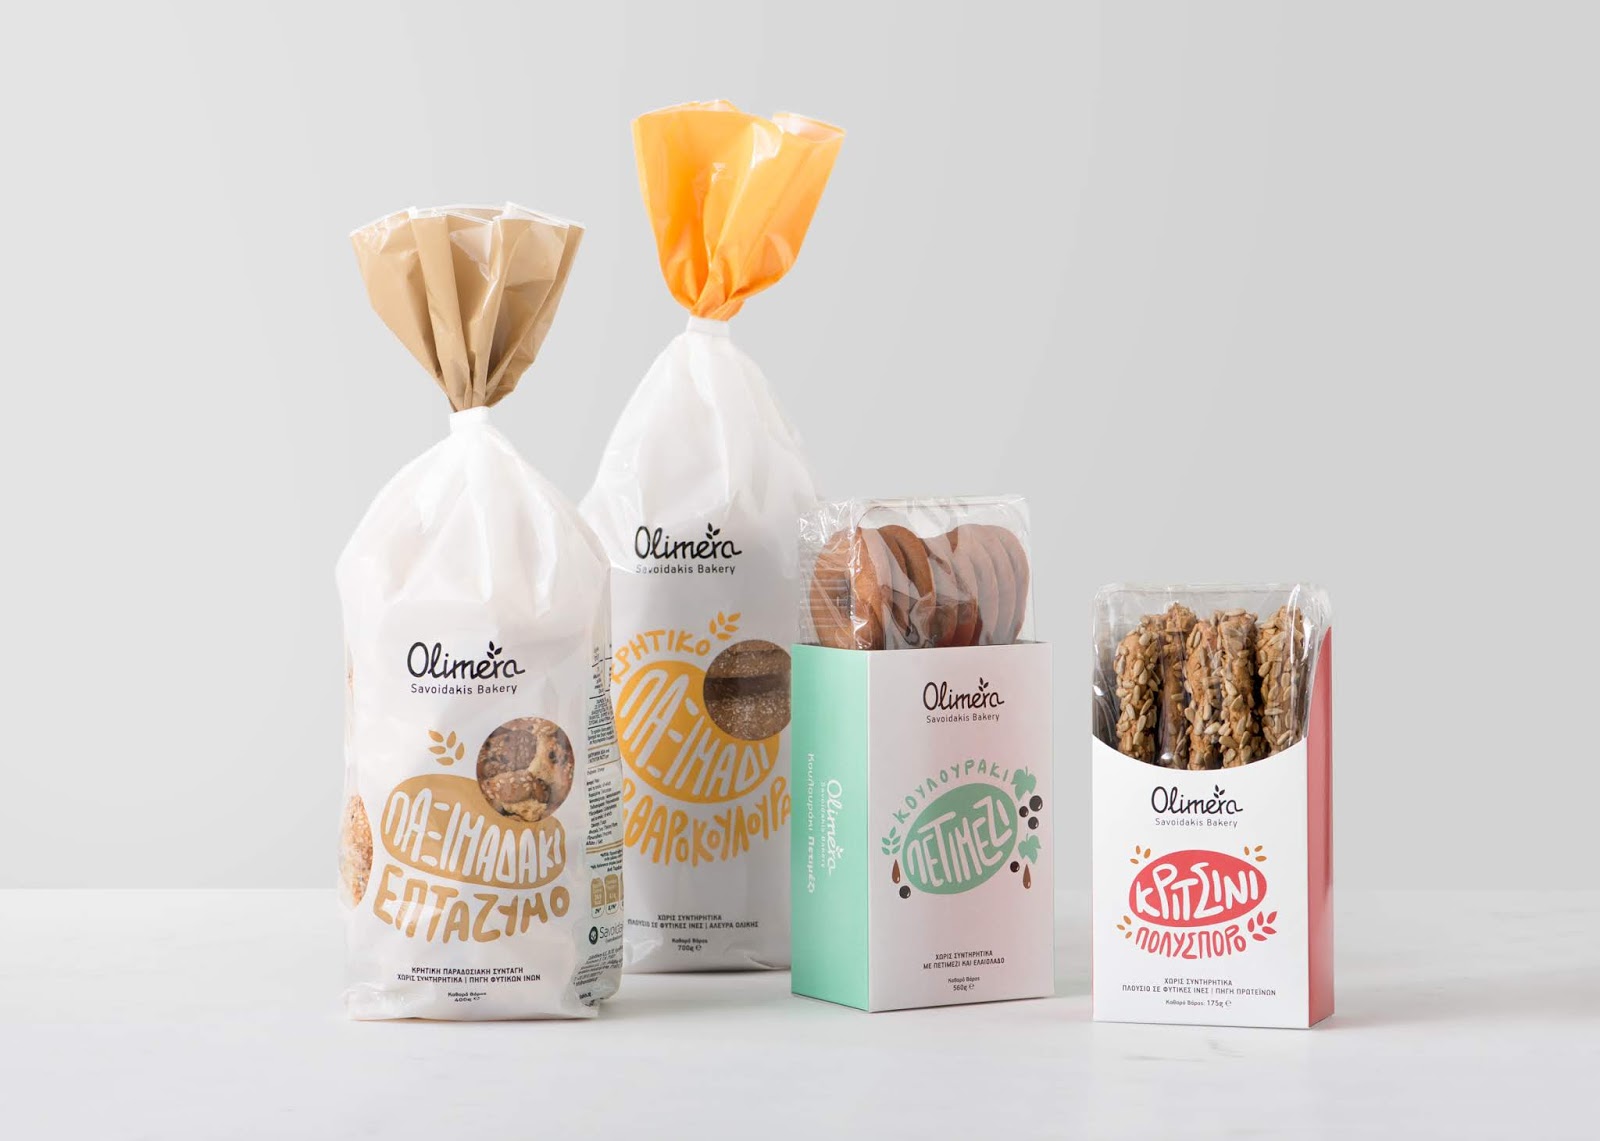 烘焙面包饼干西安oe欧亿体育app官方下载
品牌策划包装设计VI设计